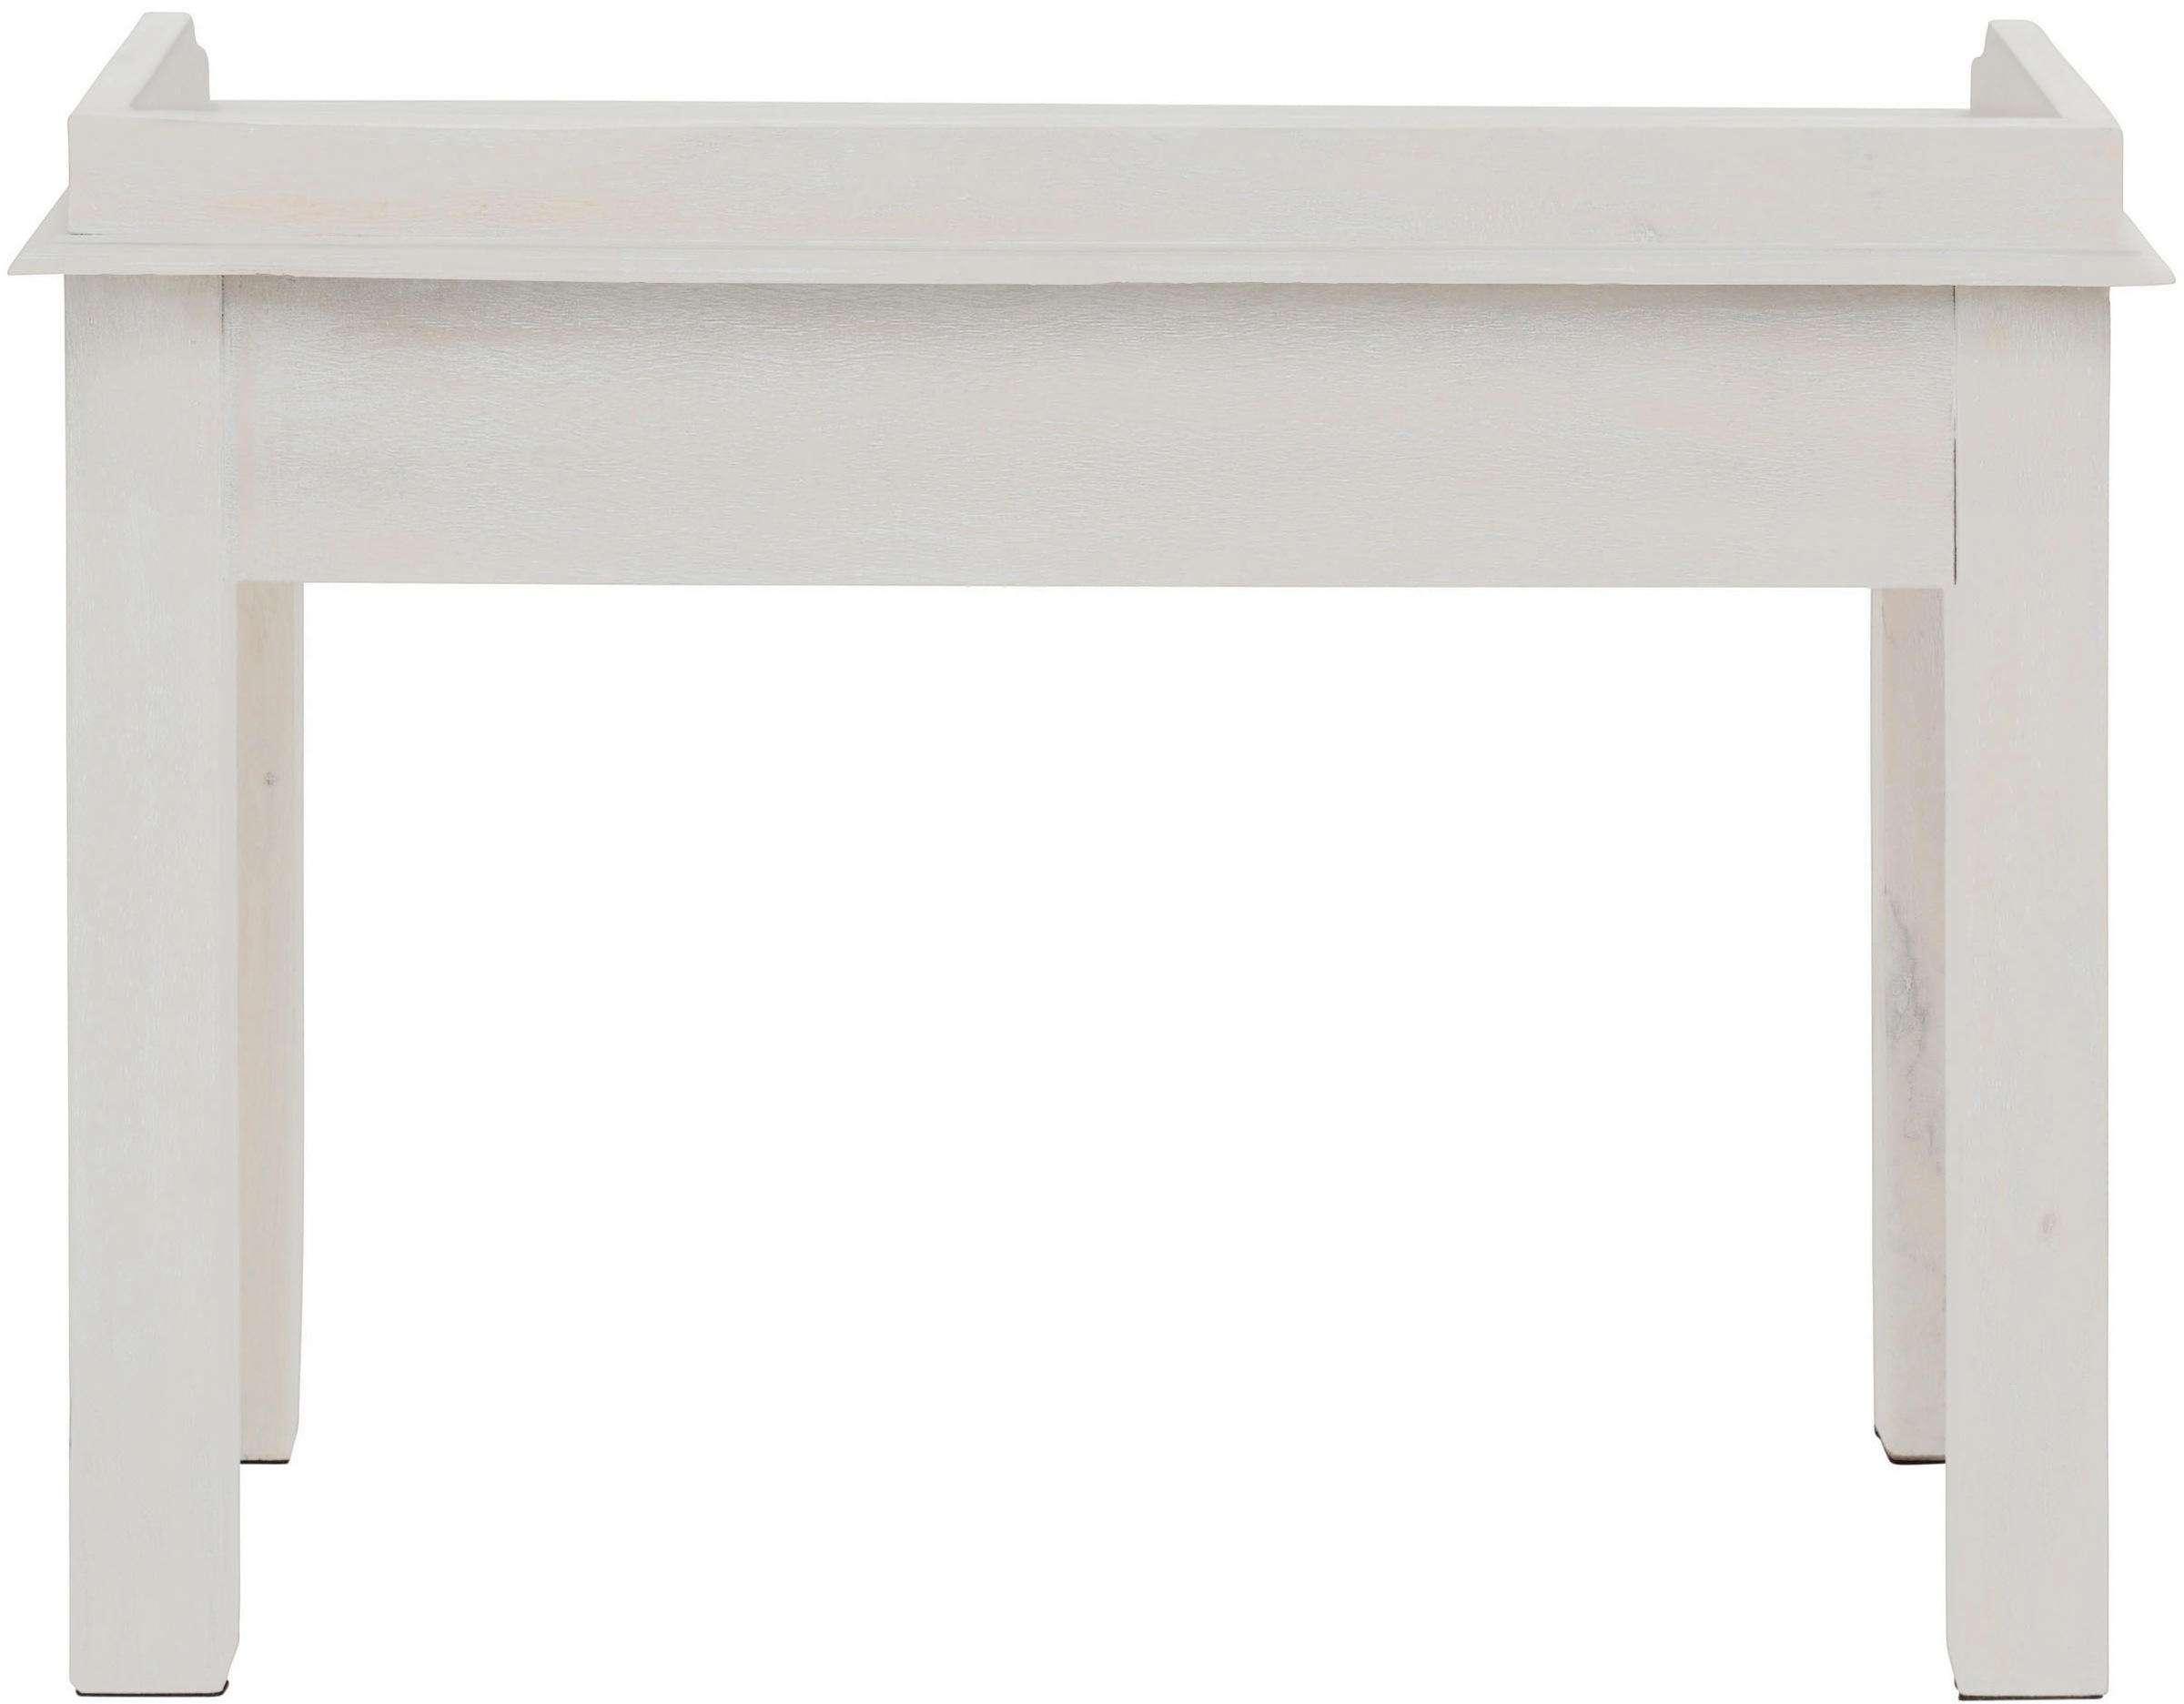 Home affaire Schreibtisch »Lavin«, Mangoholz, mit dekorativen Schnitzereien, Handgefertigt, Breite 111 cm